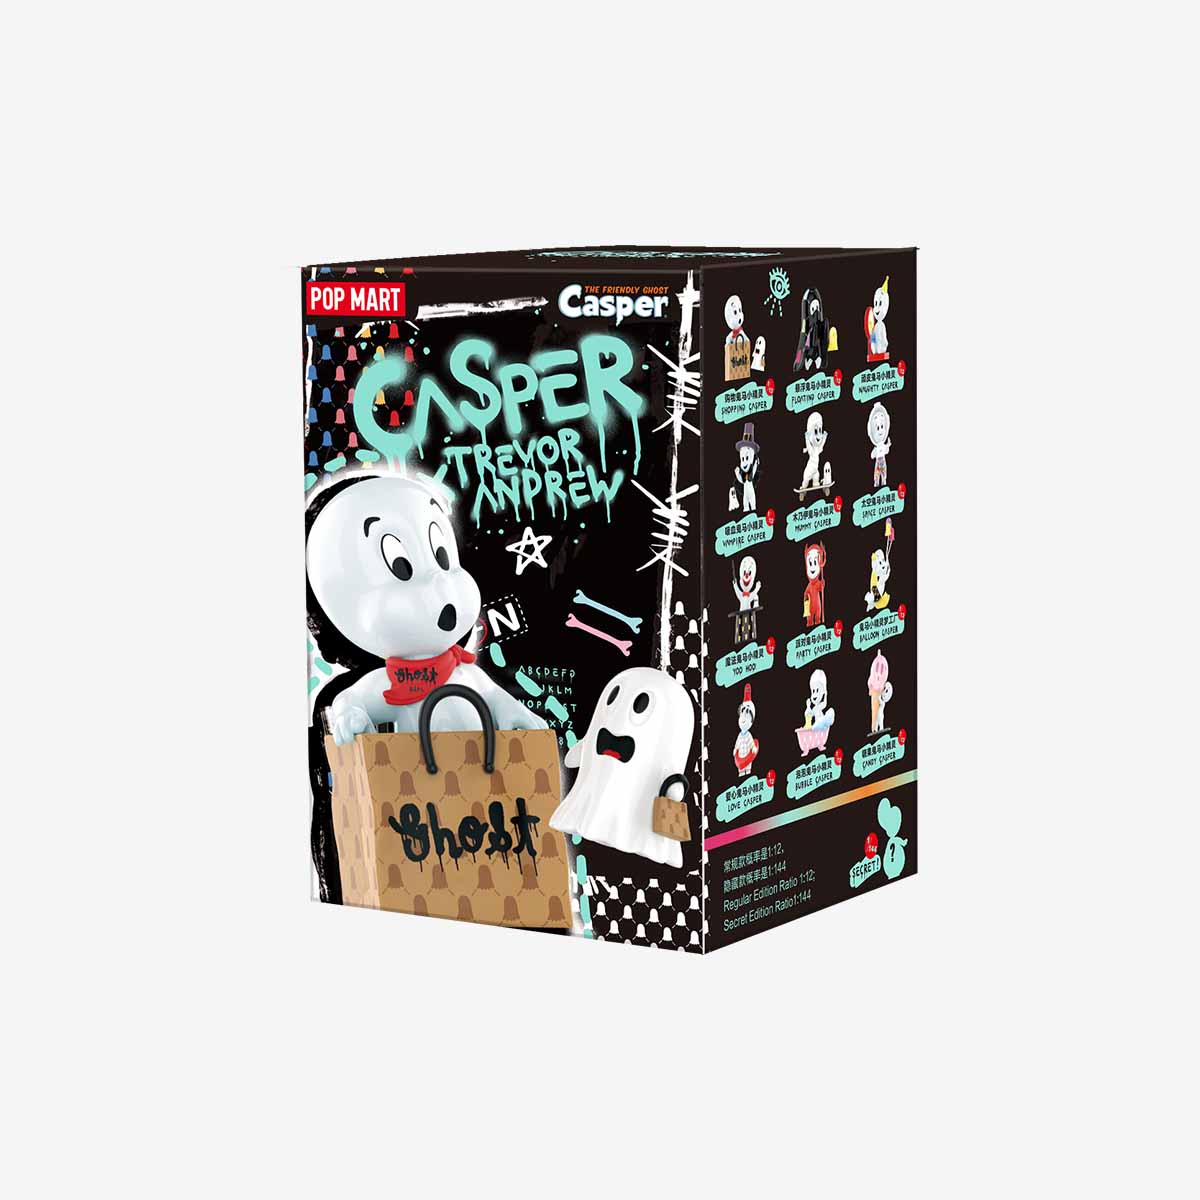 【New】Pop Mart: Casper × Trevor Andrew Series Blind Box Random Style